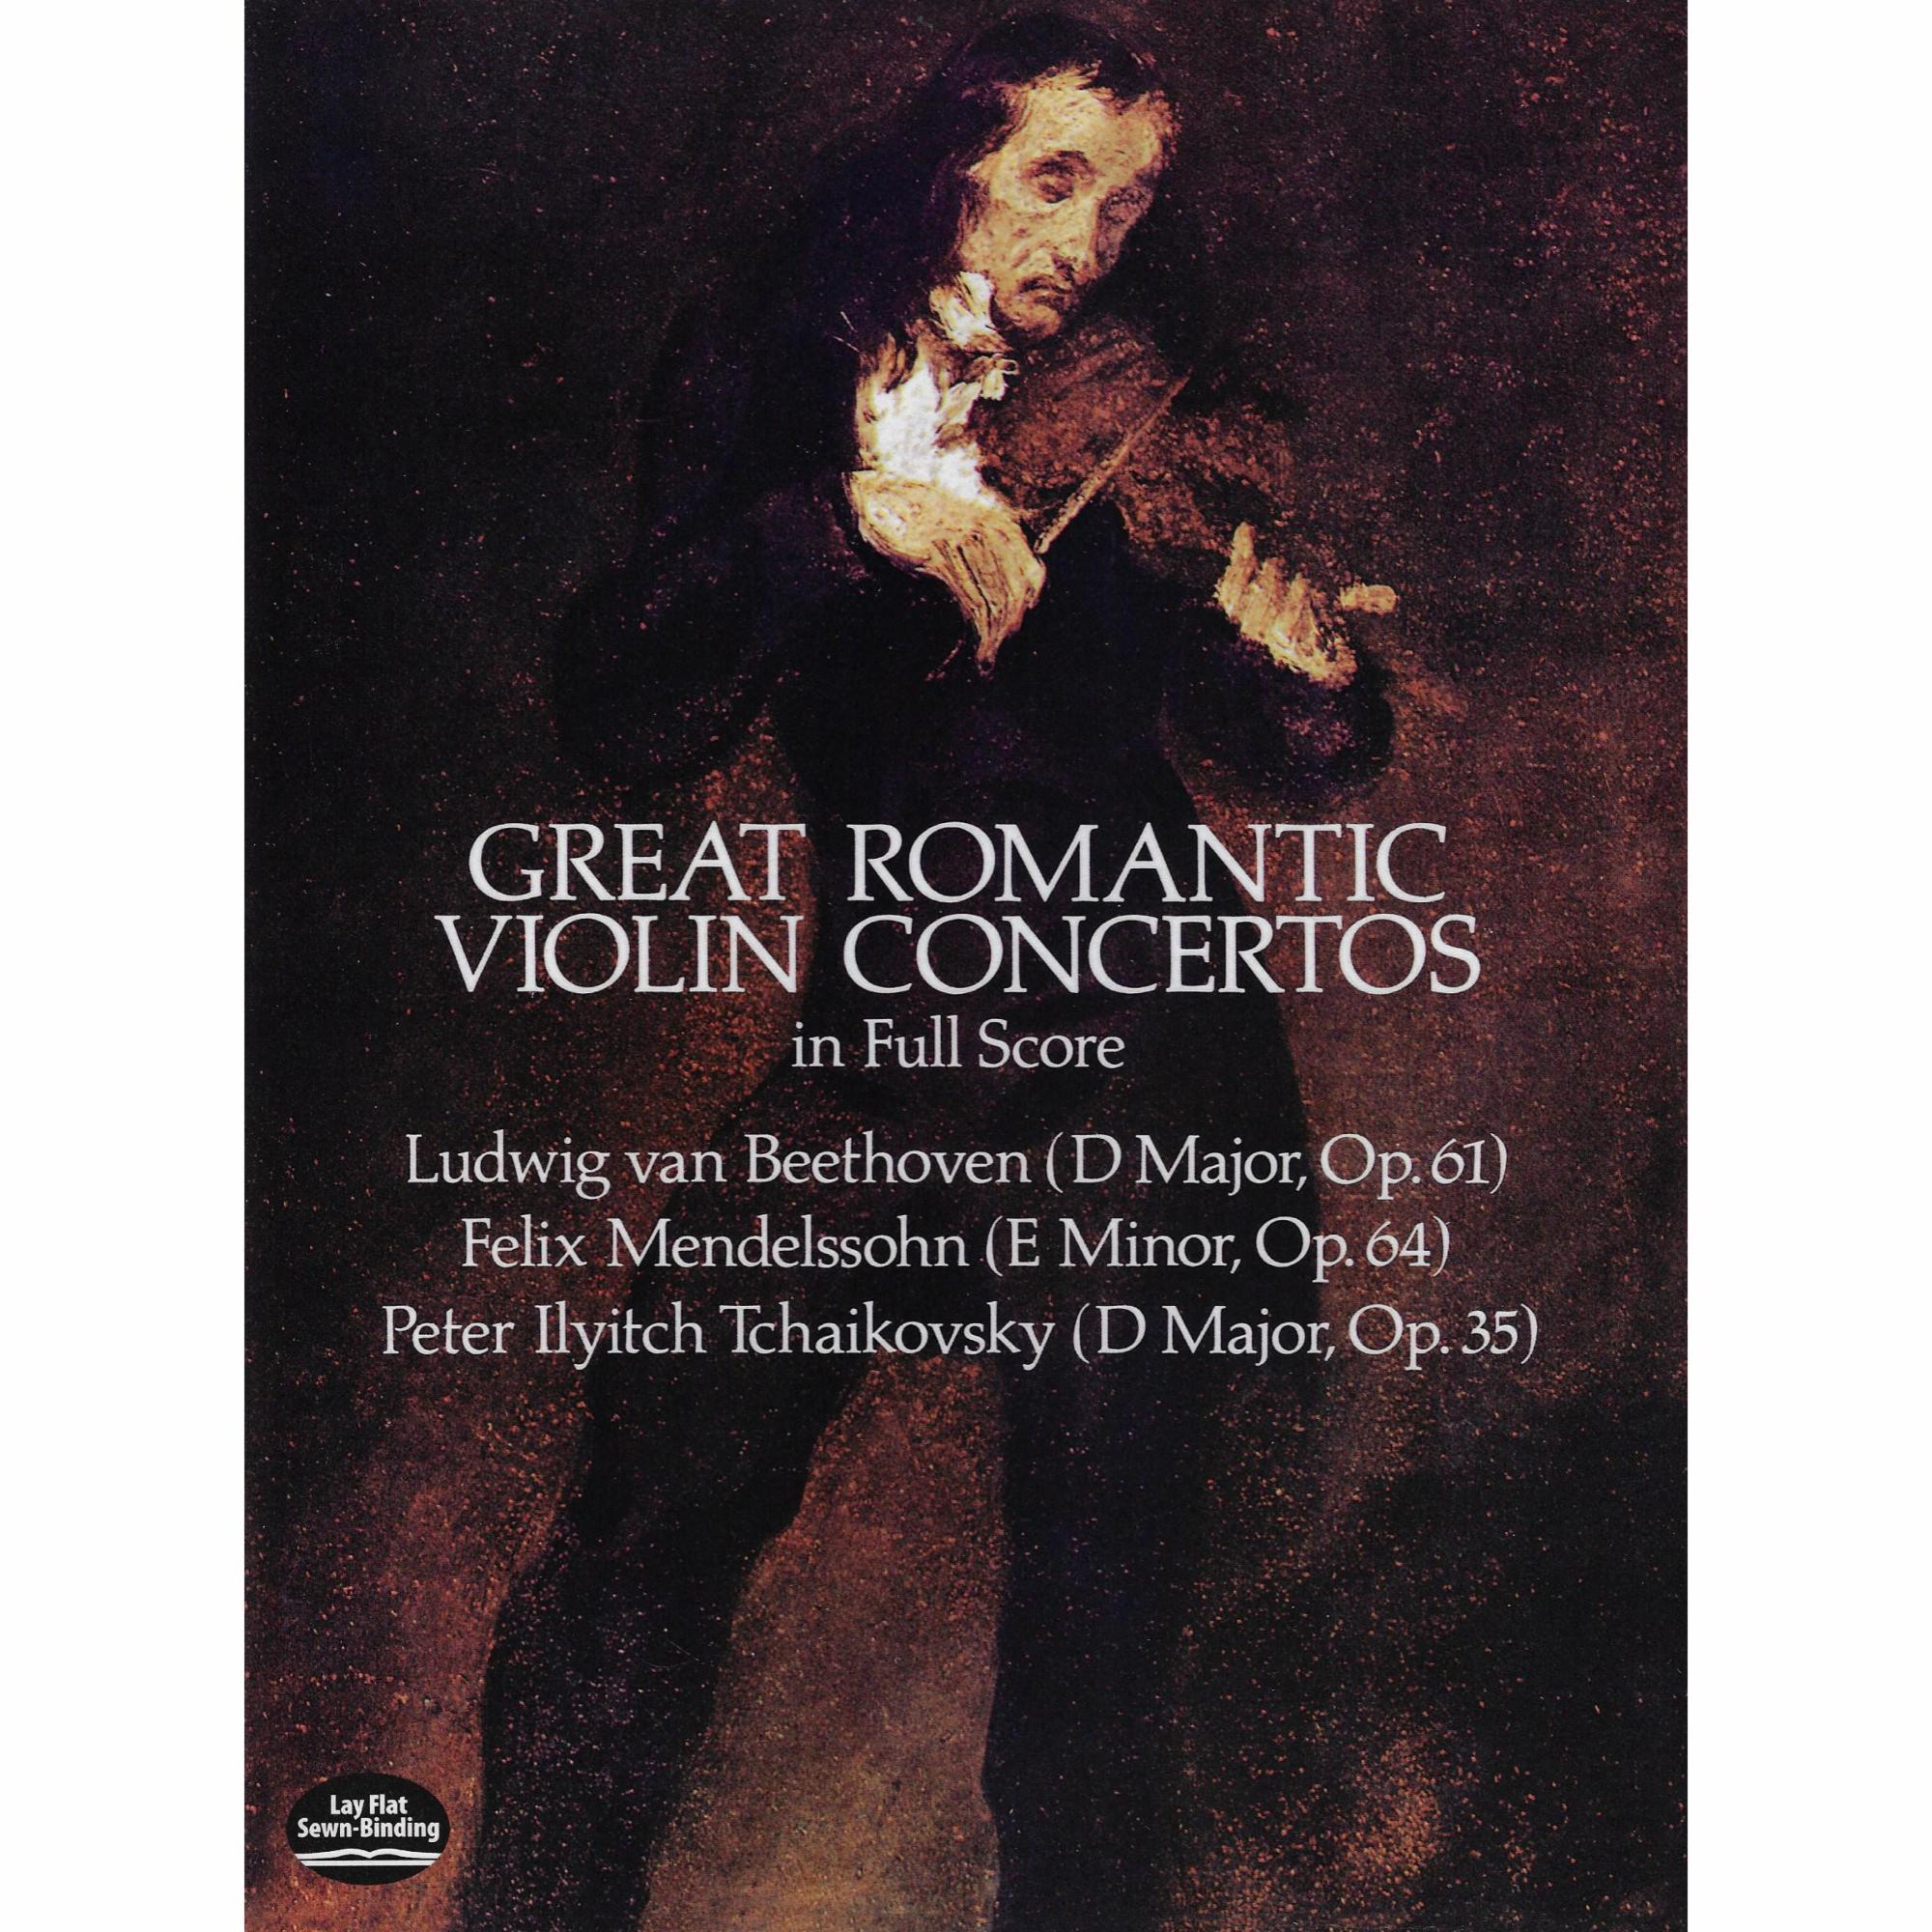 Great Romantic Violin Concertos